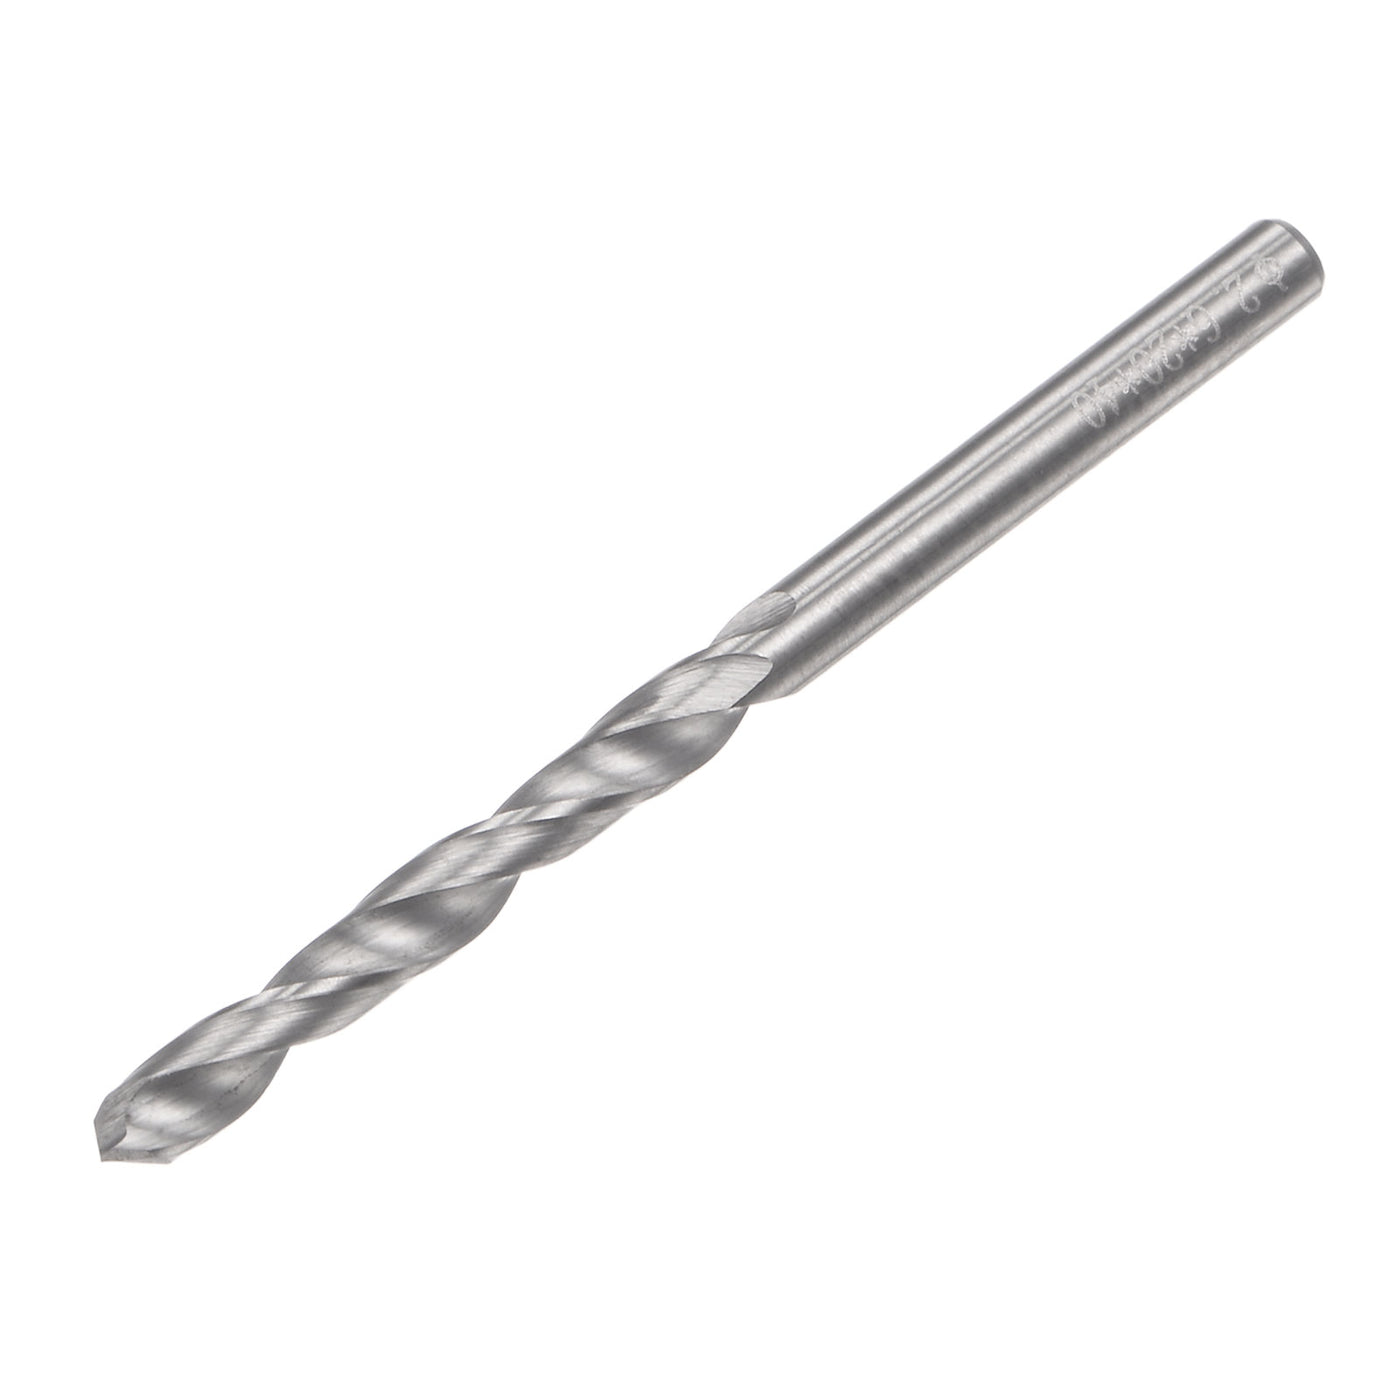 uxcell Uxcell 2.6mm C2/K20 Tungsten Carbide Straight Shank Spiral Flutes Twist Drill Bit